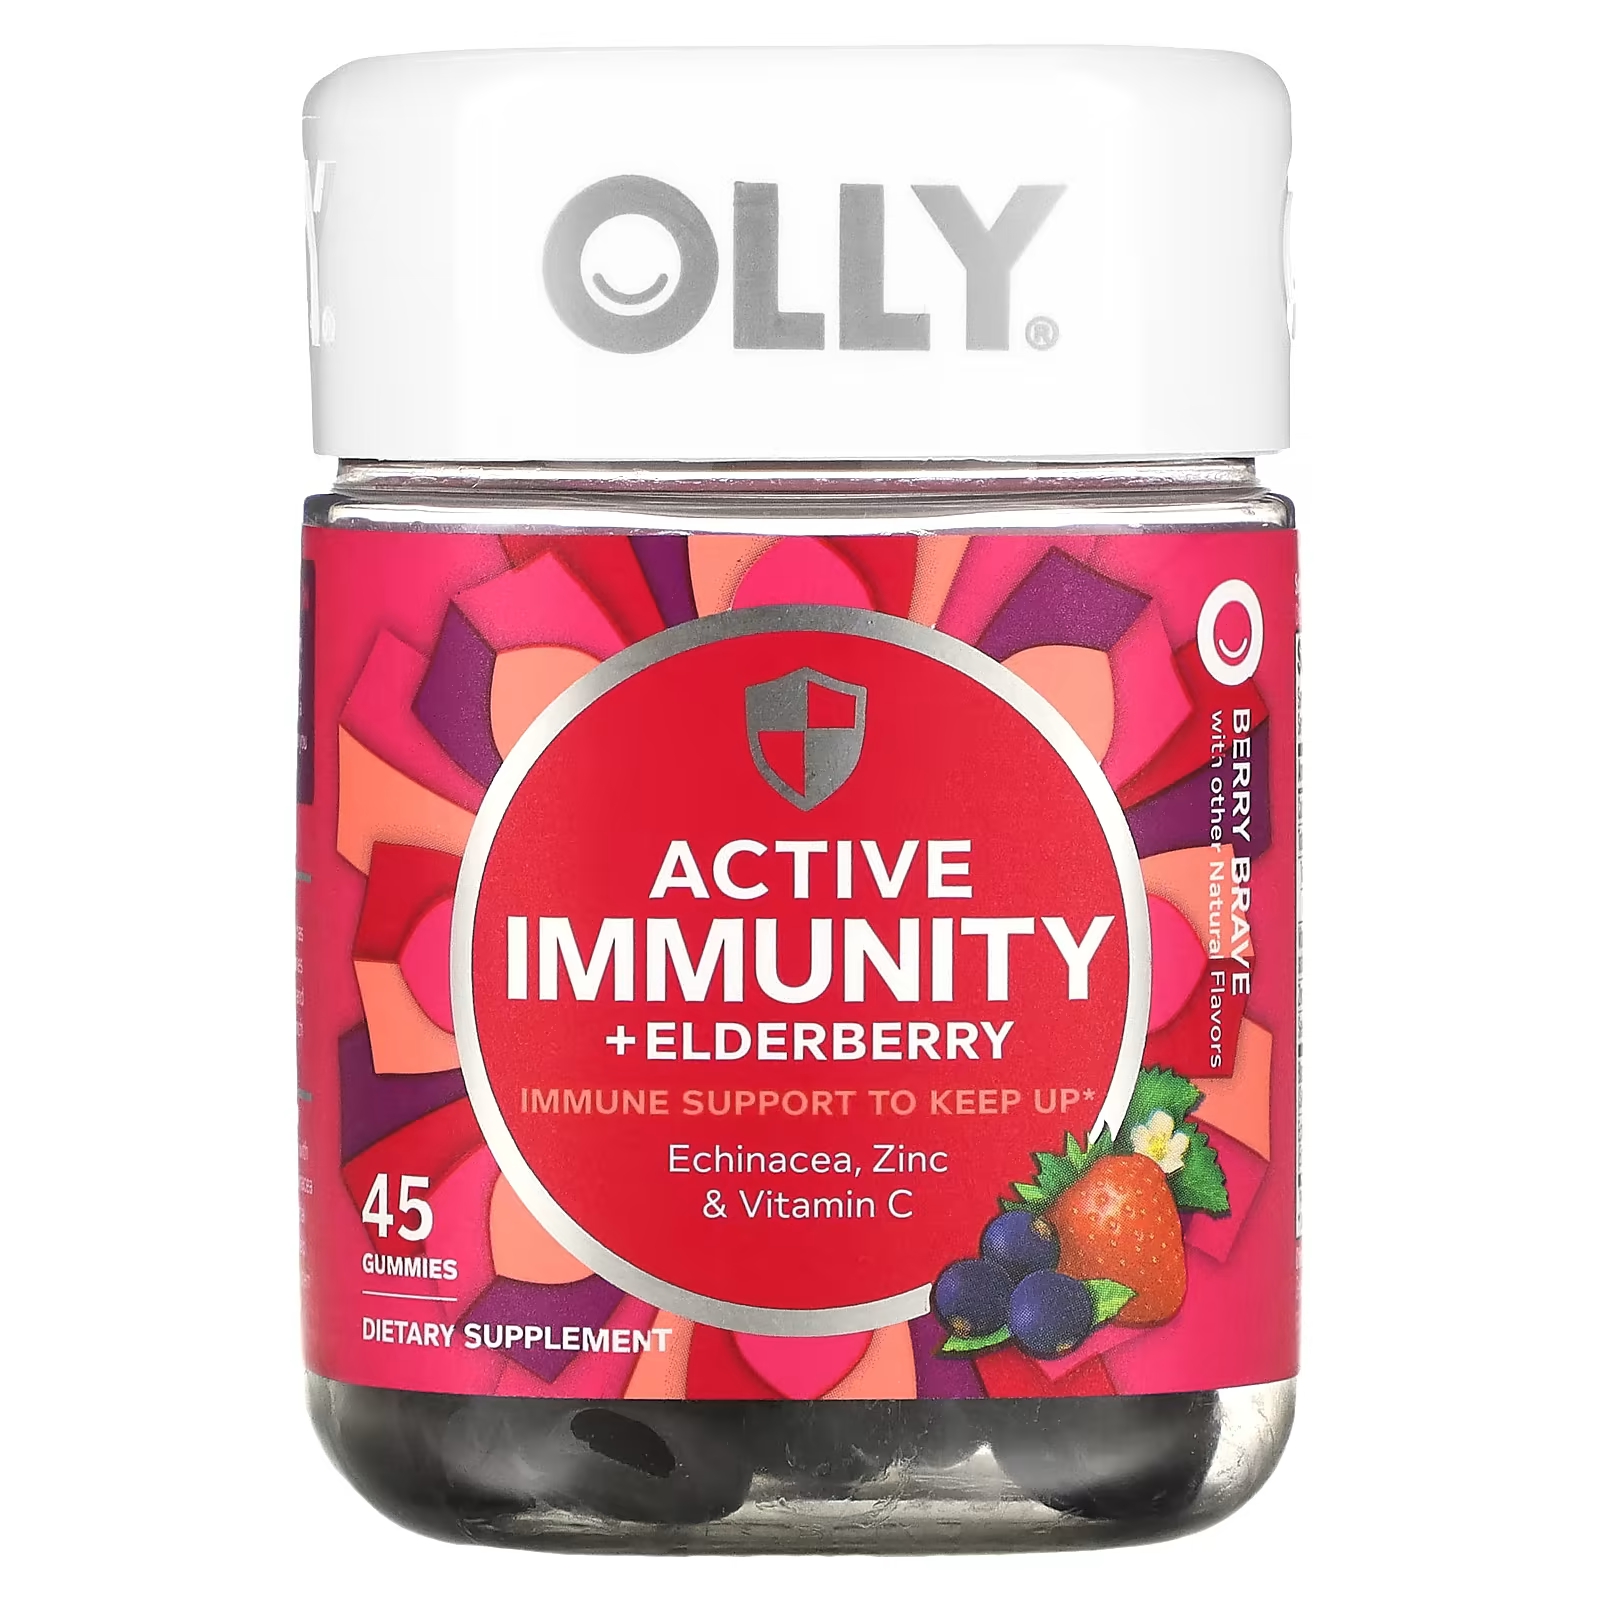 Пищевая добавка Olly Active Immunity + Elderberry Berry Brave, 45 жевательных таблеток olly teen girl multi berry melon besties 70 жевательных таблеток